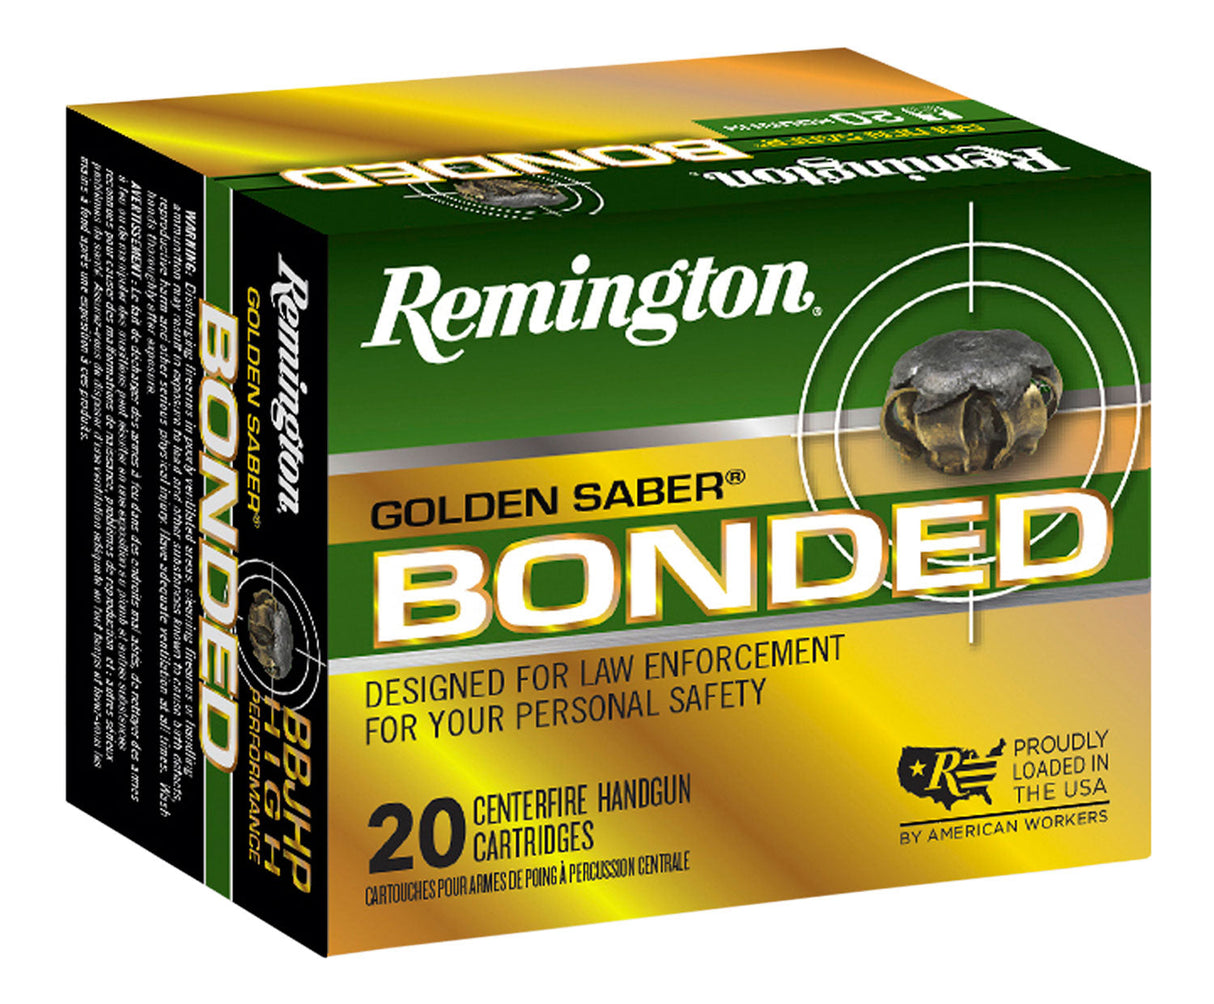 Remington Golden Saber .45ACP 185 Grain